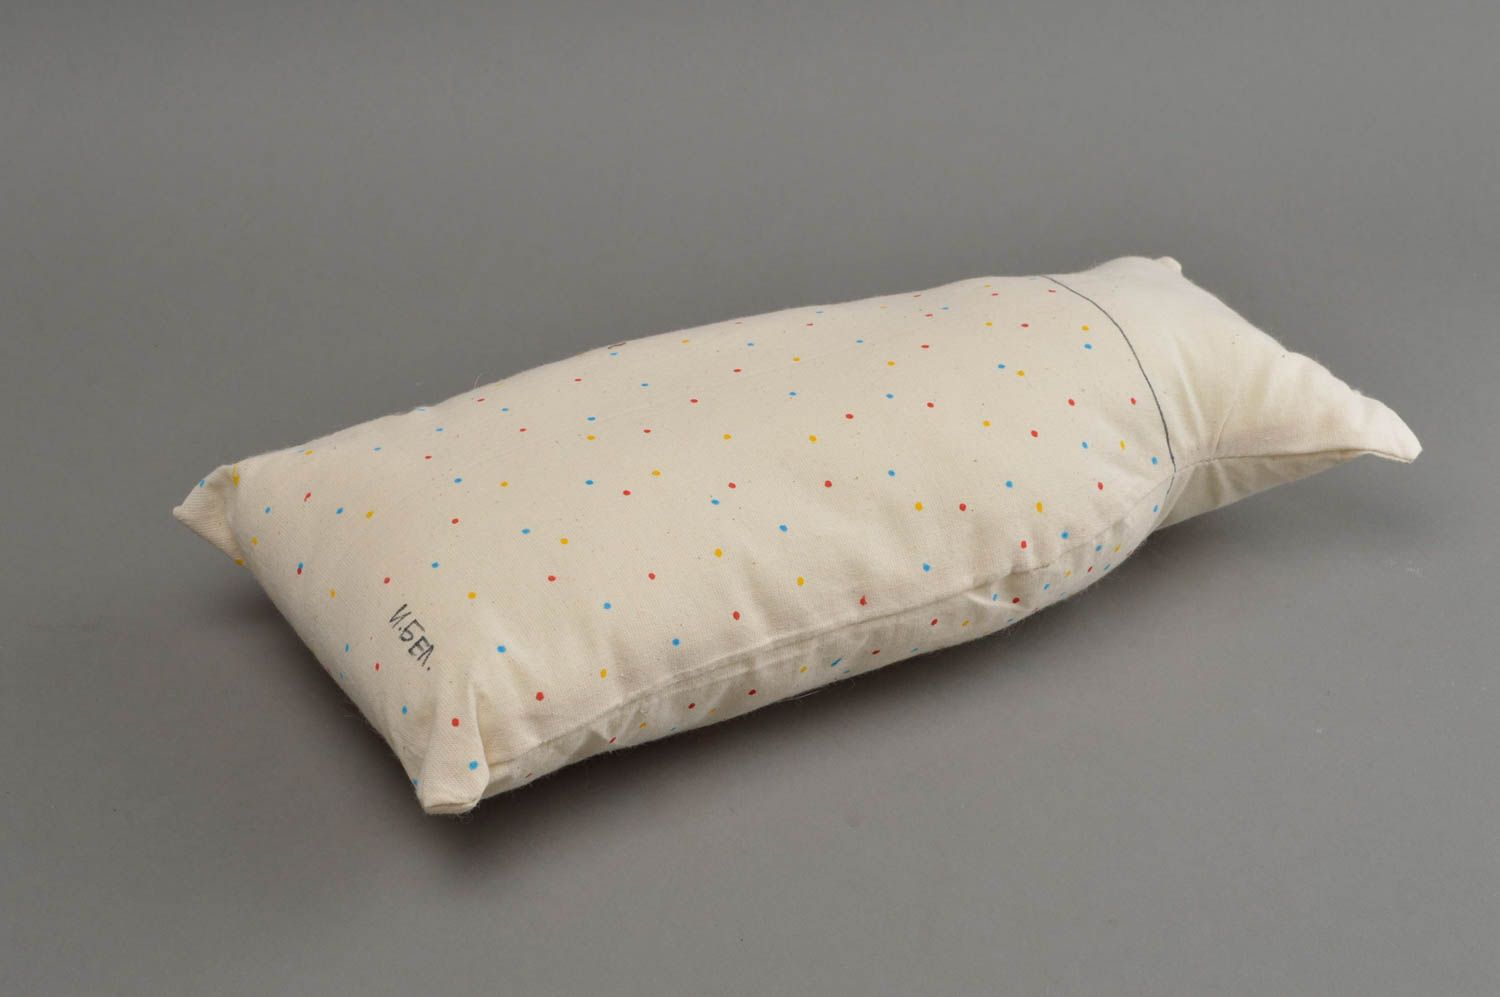 Хлопчатобумажная подушка в виде кота расписная белая красивая хэнд мэйд фото 3